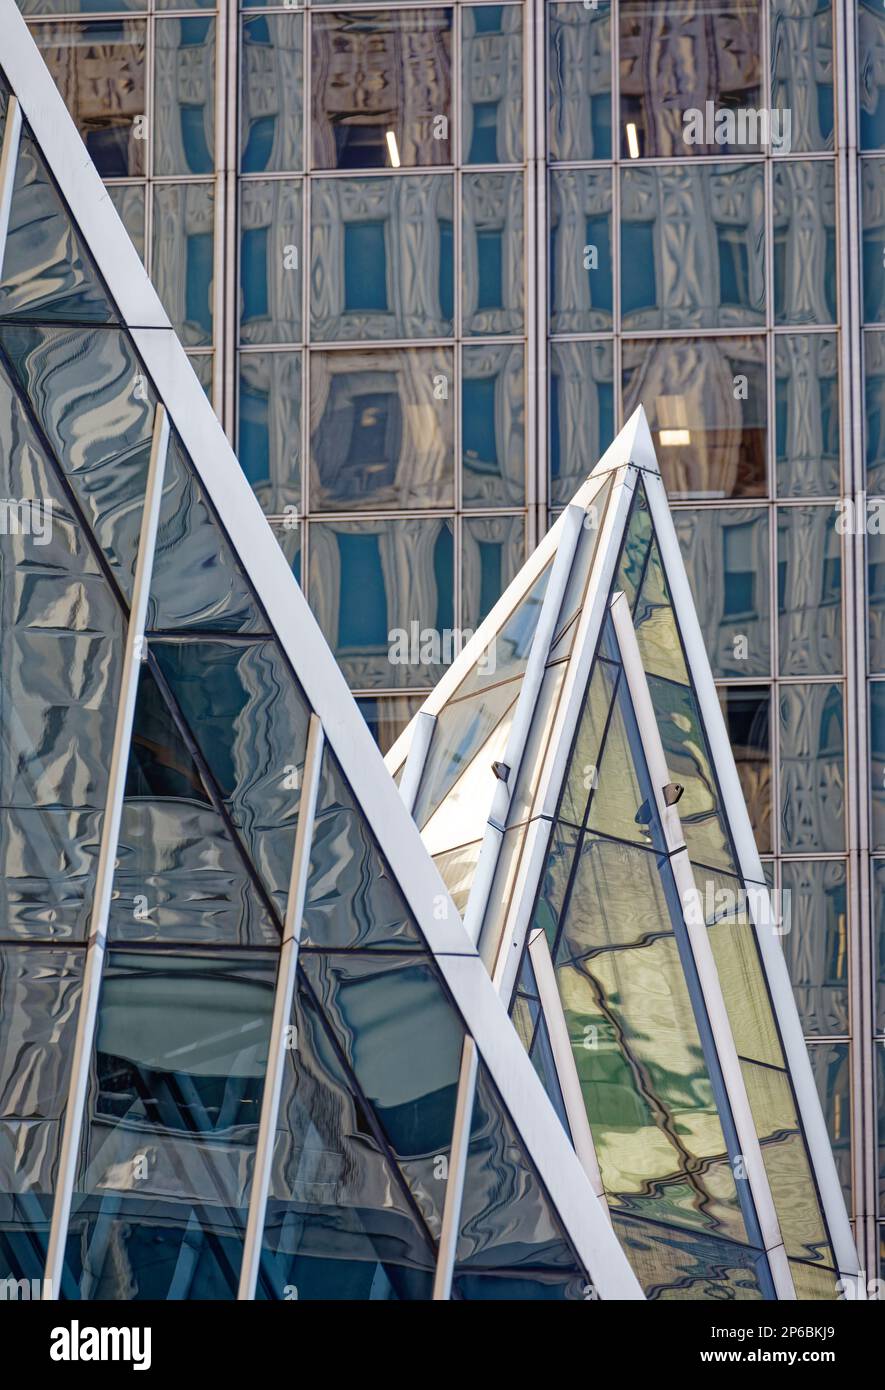 Chrysler Trylons, progettato dal maestro postmoderno Philip Johnson, è notevole per le sue piramidi di vetro con cornice in acciaio, mostrate qui contro la 666 Third Avenue. Foto Stock